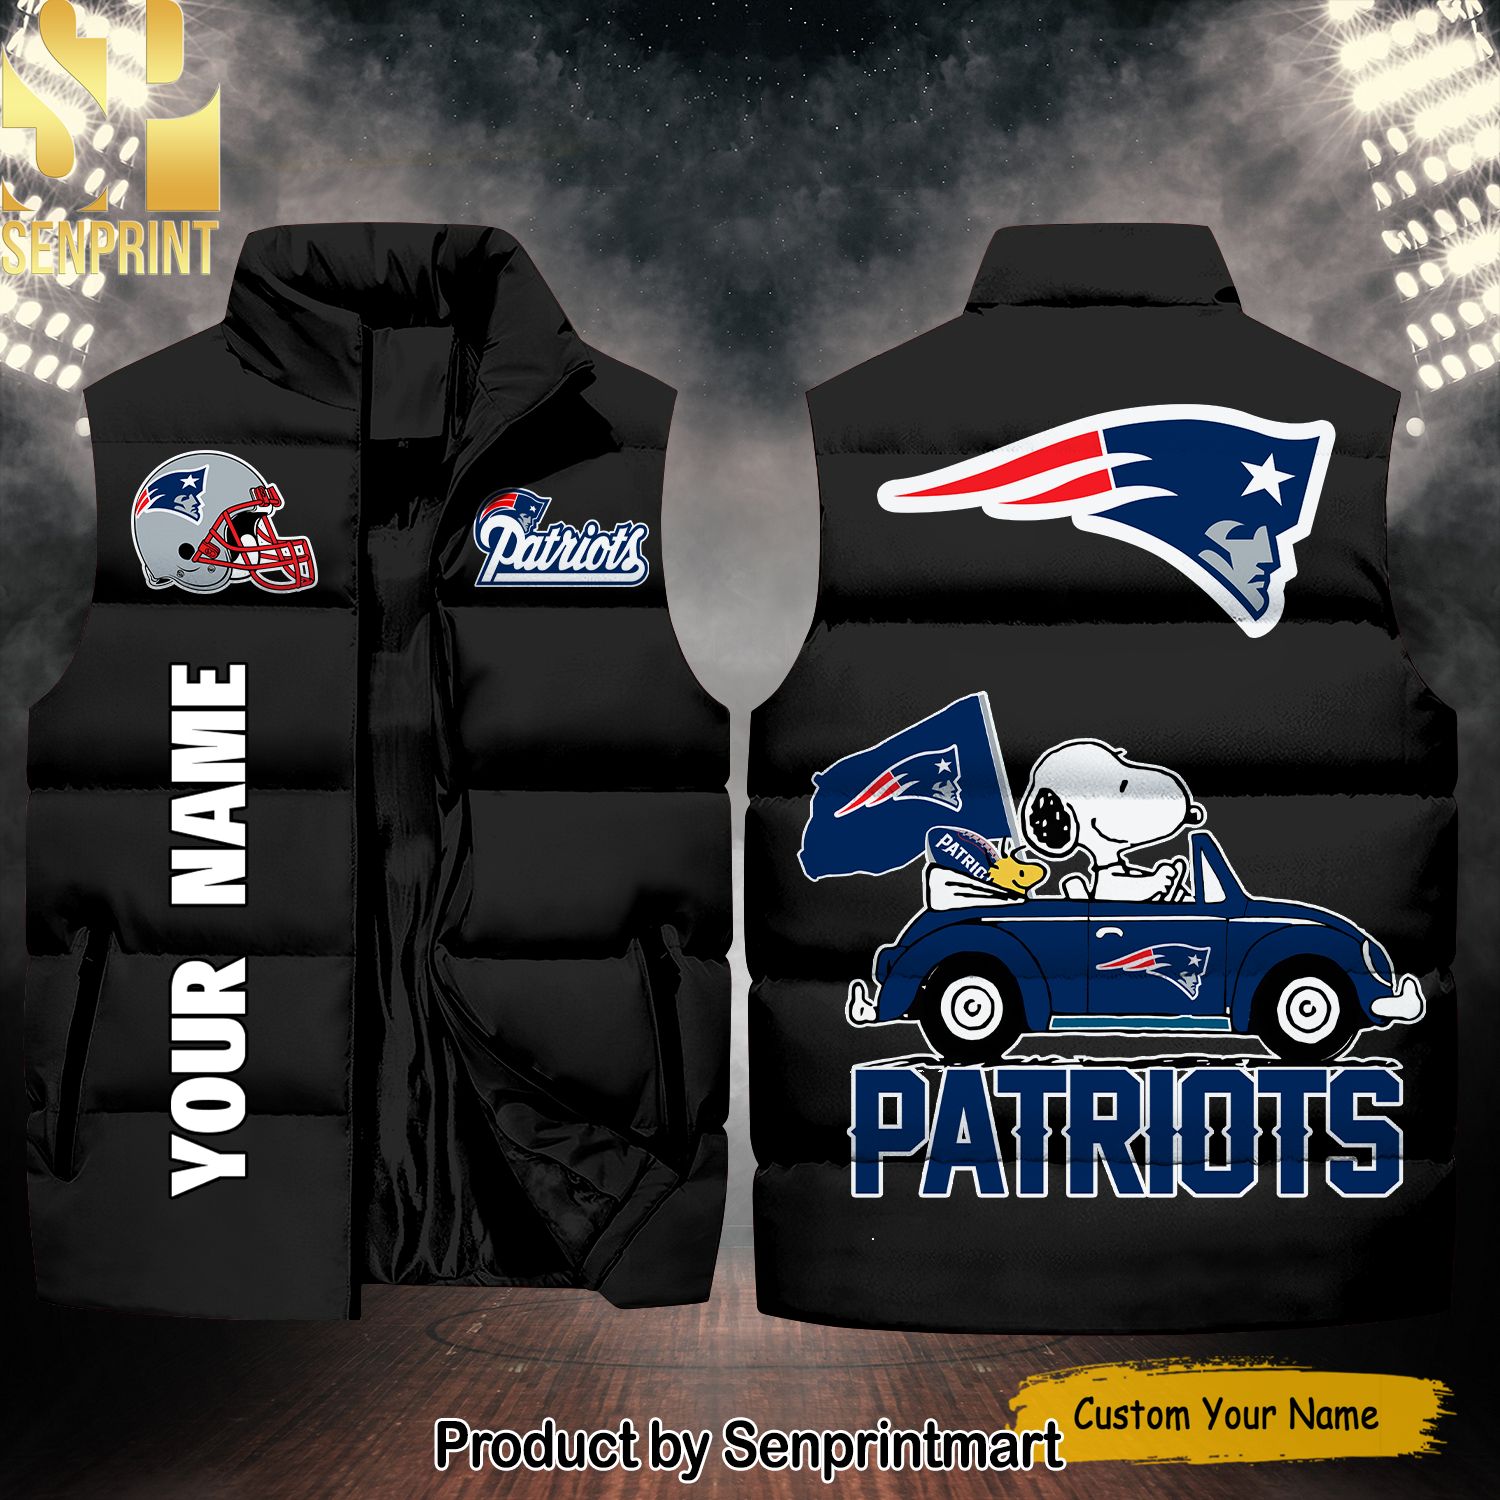 National Football League New England Patriots Peanuts Snoopy New Style Sleeveless Jacket